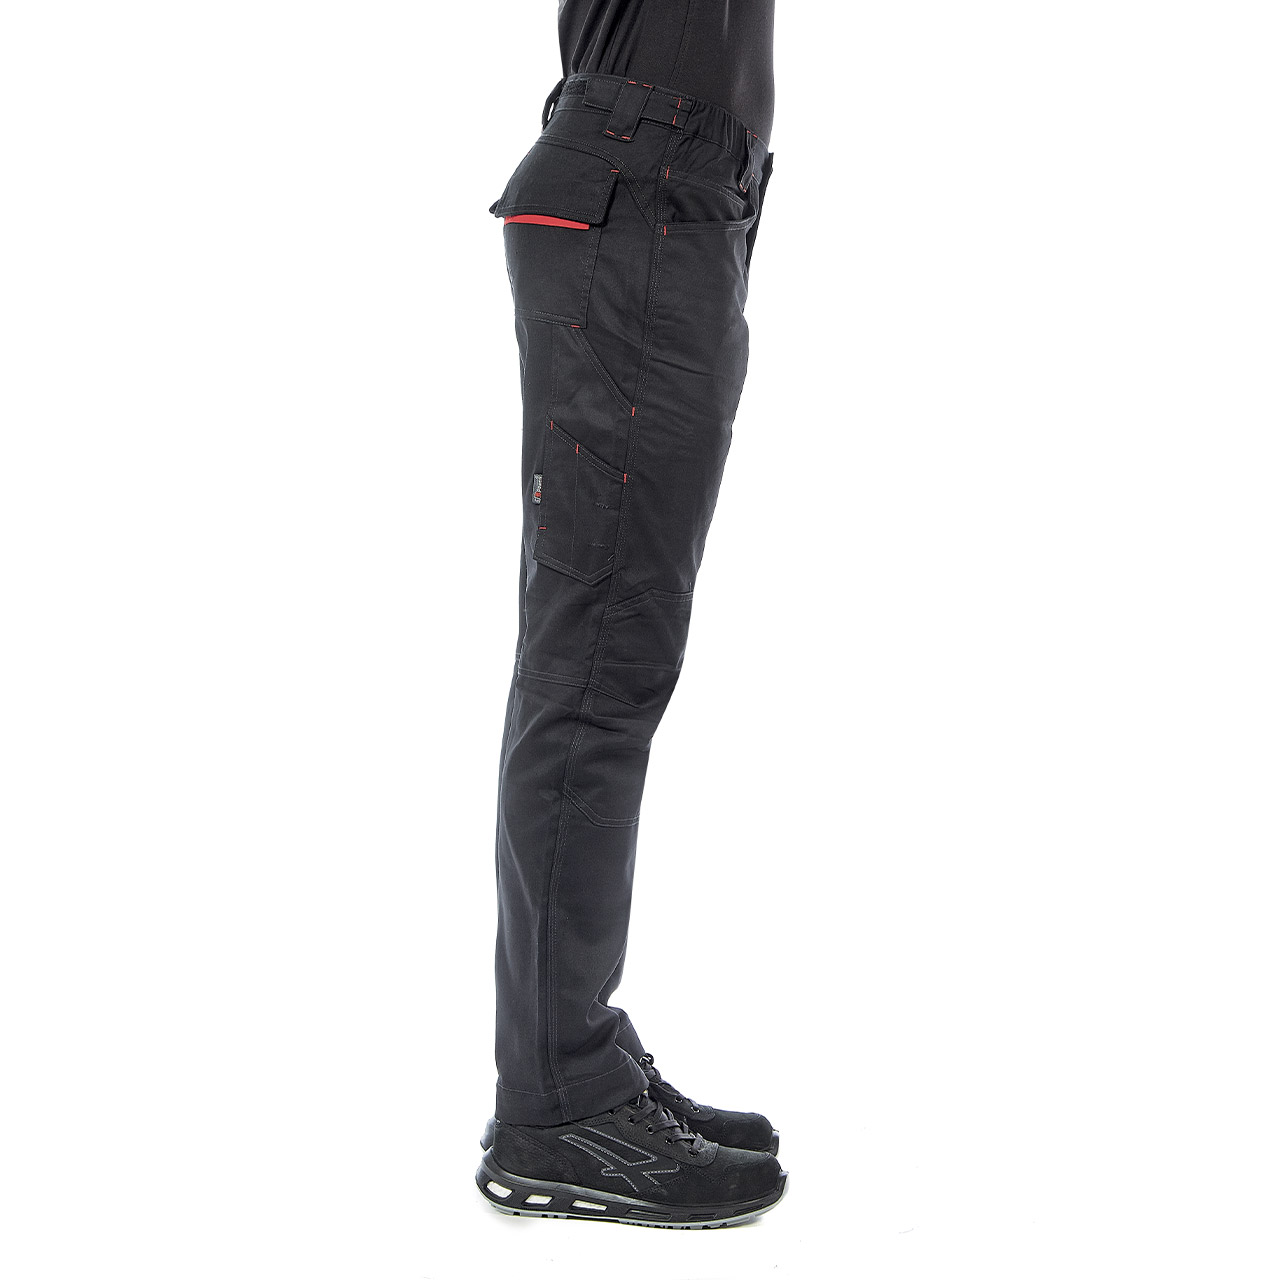 pantalone da lavoro upower modello smile colore black carbon indossato lato destro